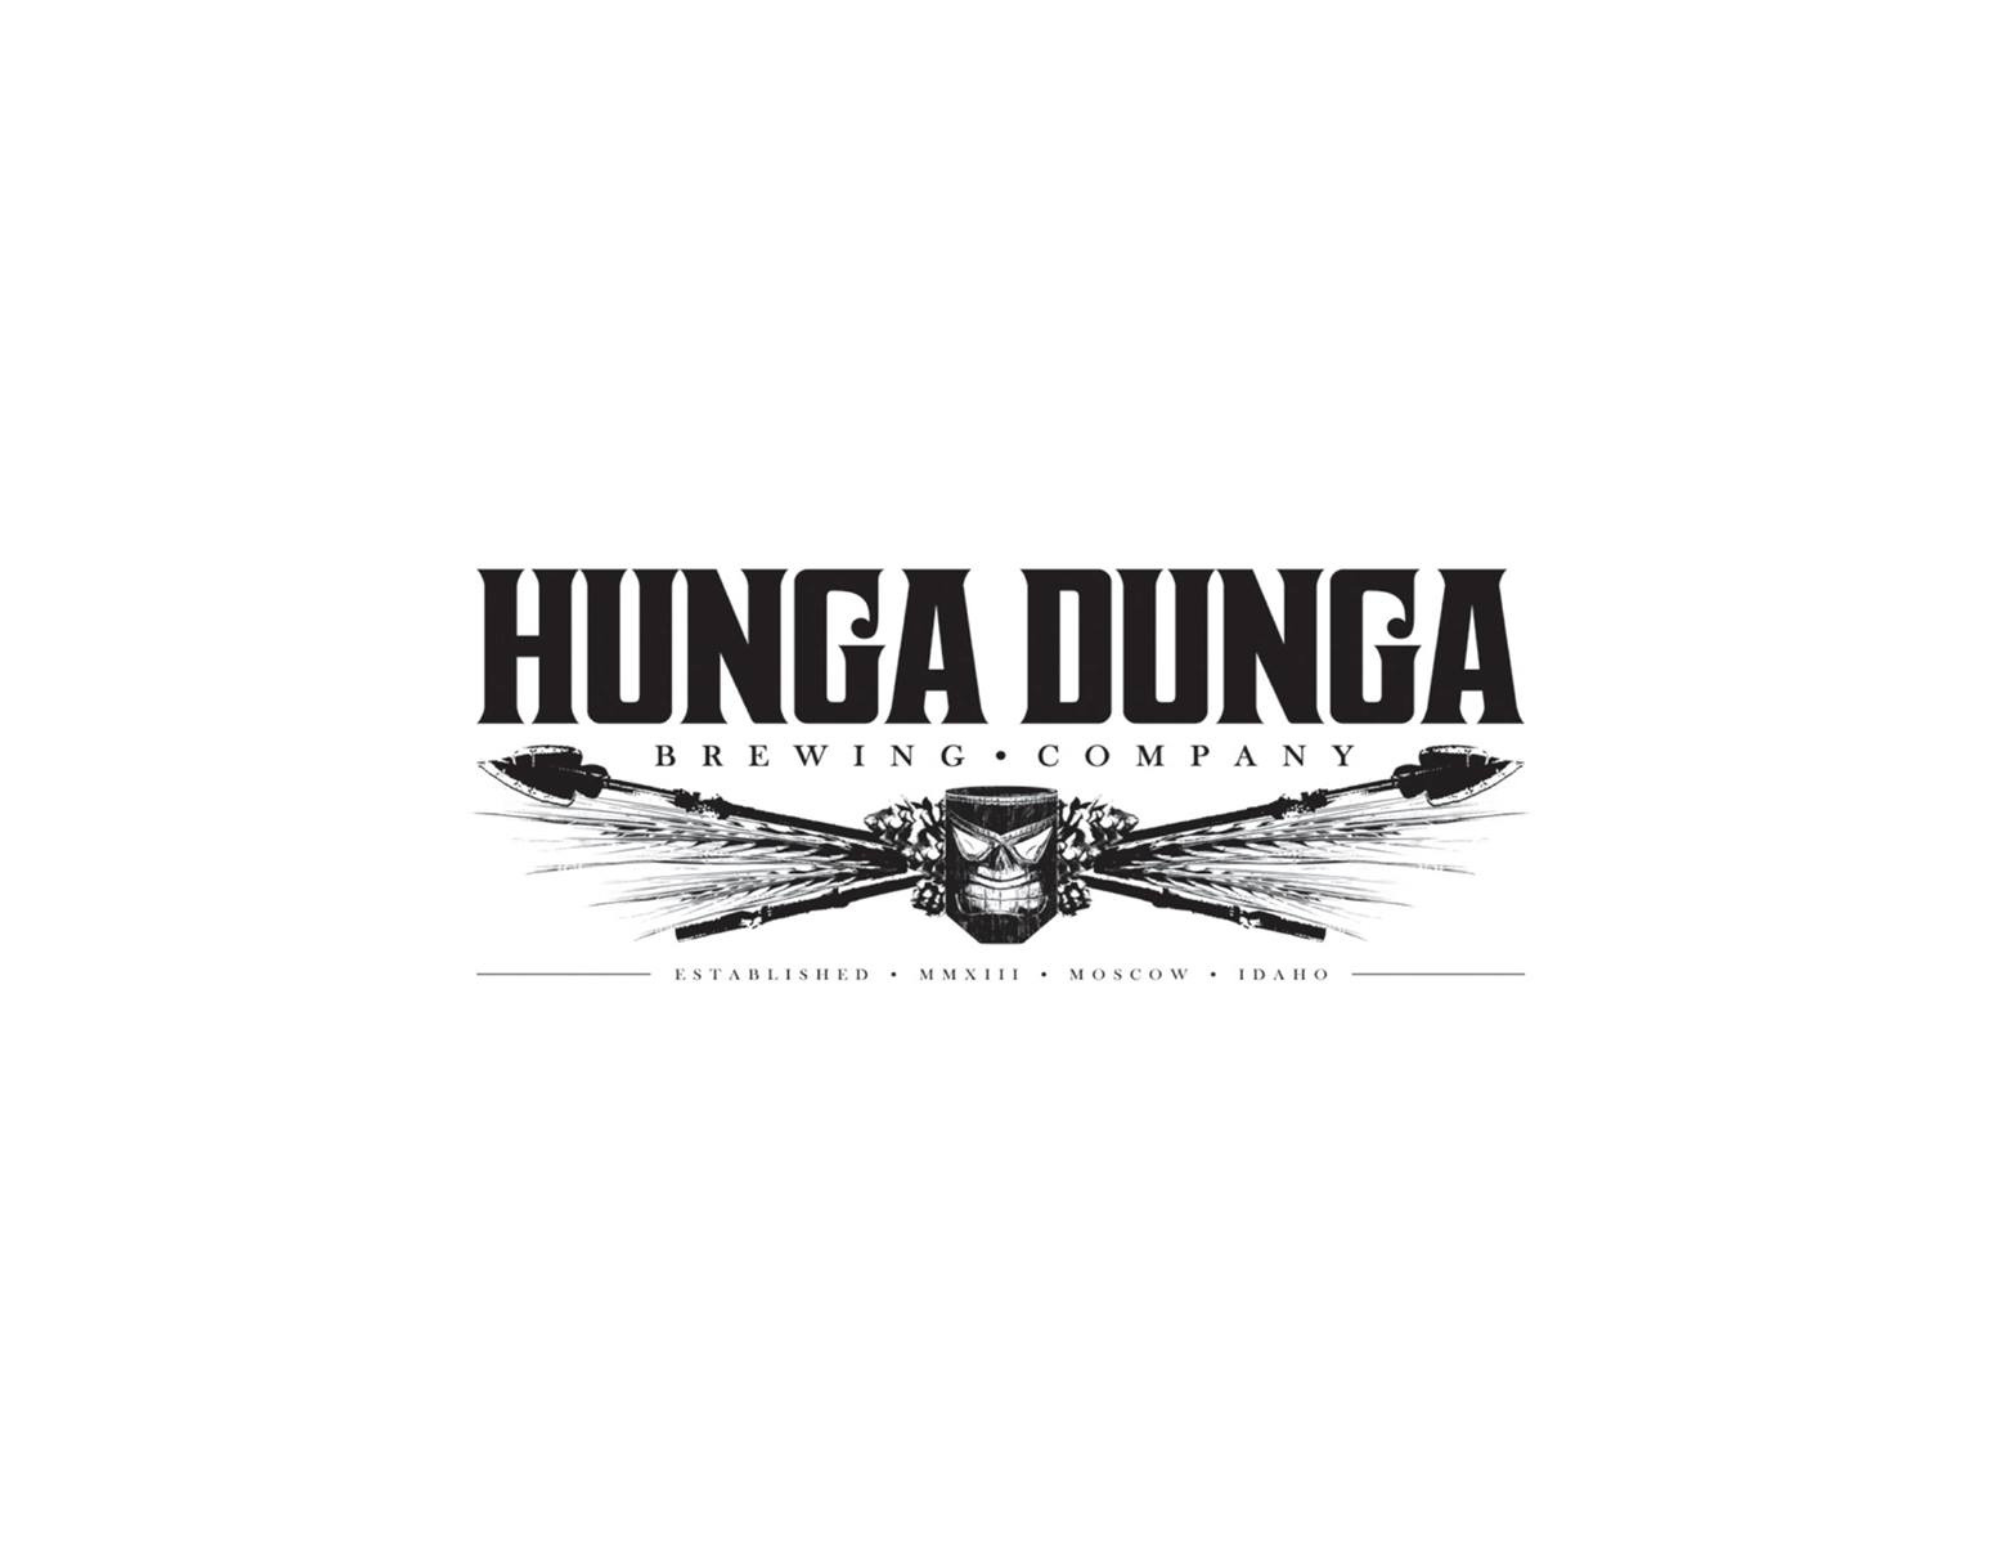 Hunga Dunga